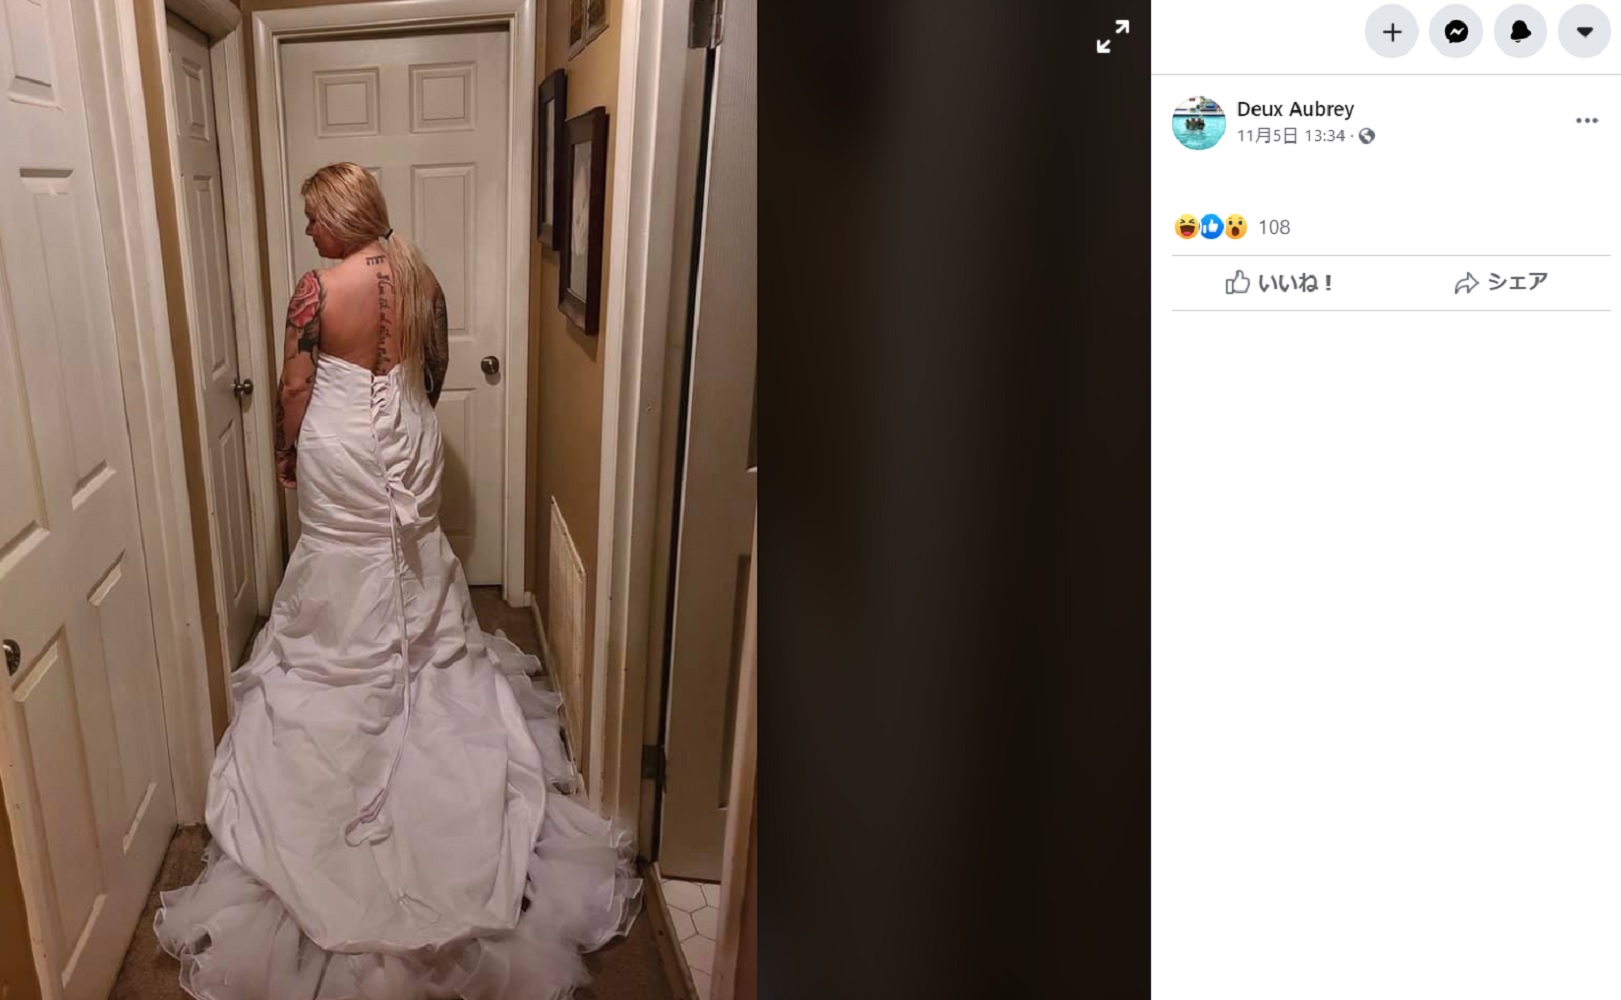 米ケンタッキー州在住の女性は2020年、ネットでウェディングドレスを注文したが「写真と違う」とクレームを入れた。しかし女性は後になって、大きな勘違いをしていたことに気付く（画像は『Deux Aubrey　2020年11月5日付Facebook「Two weeks ago my wedding dress came in.」』のスクリーンショット）